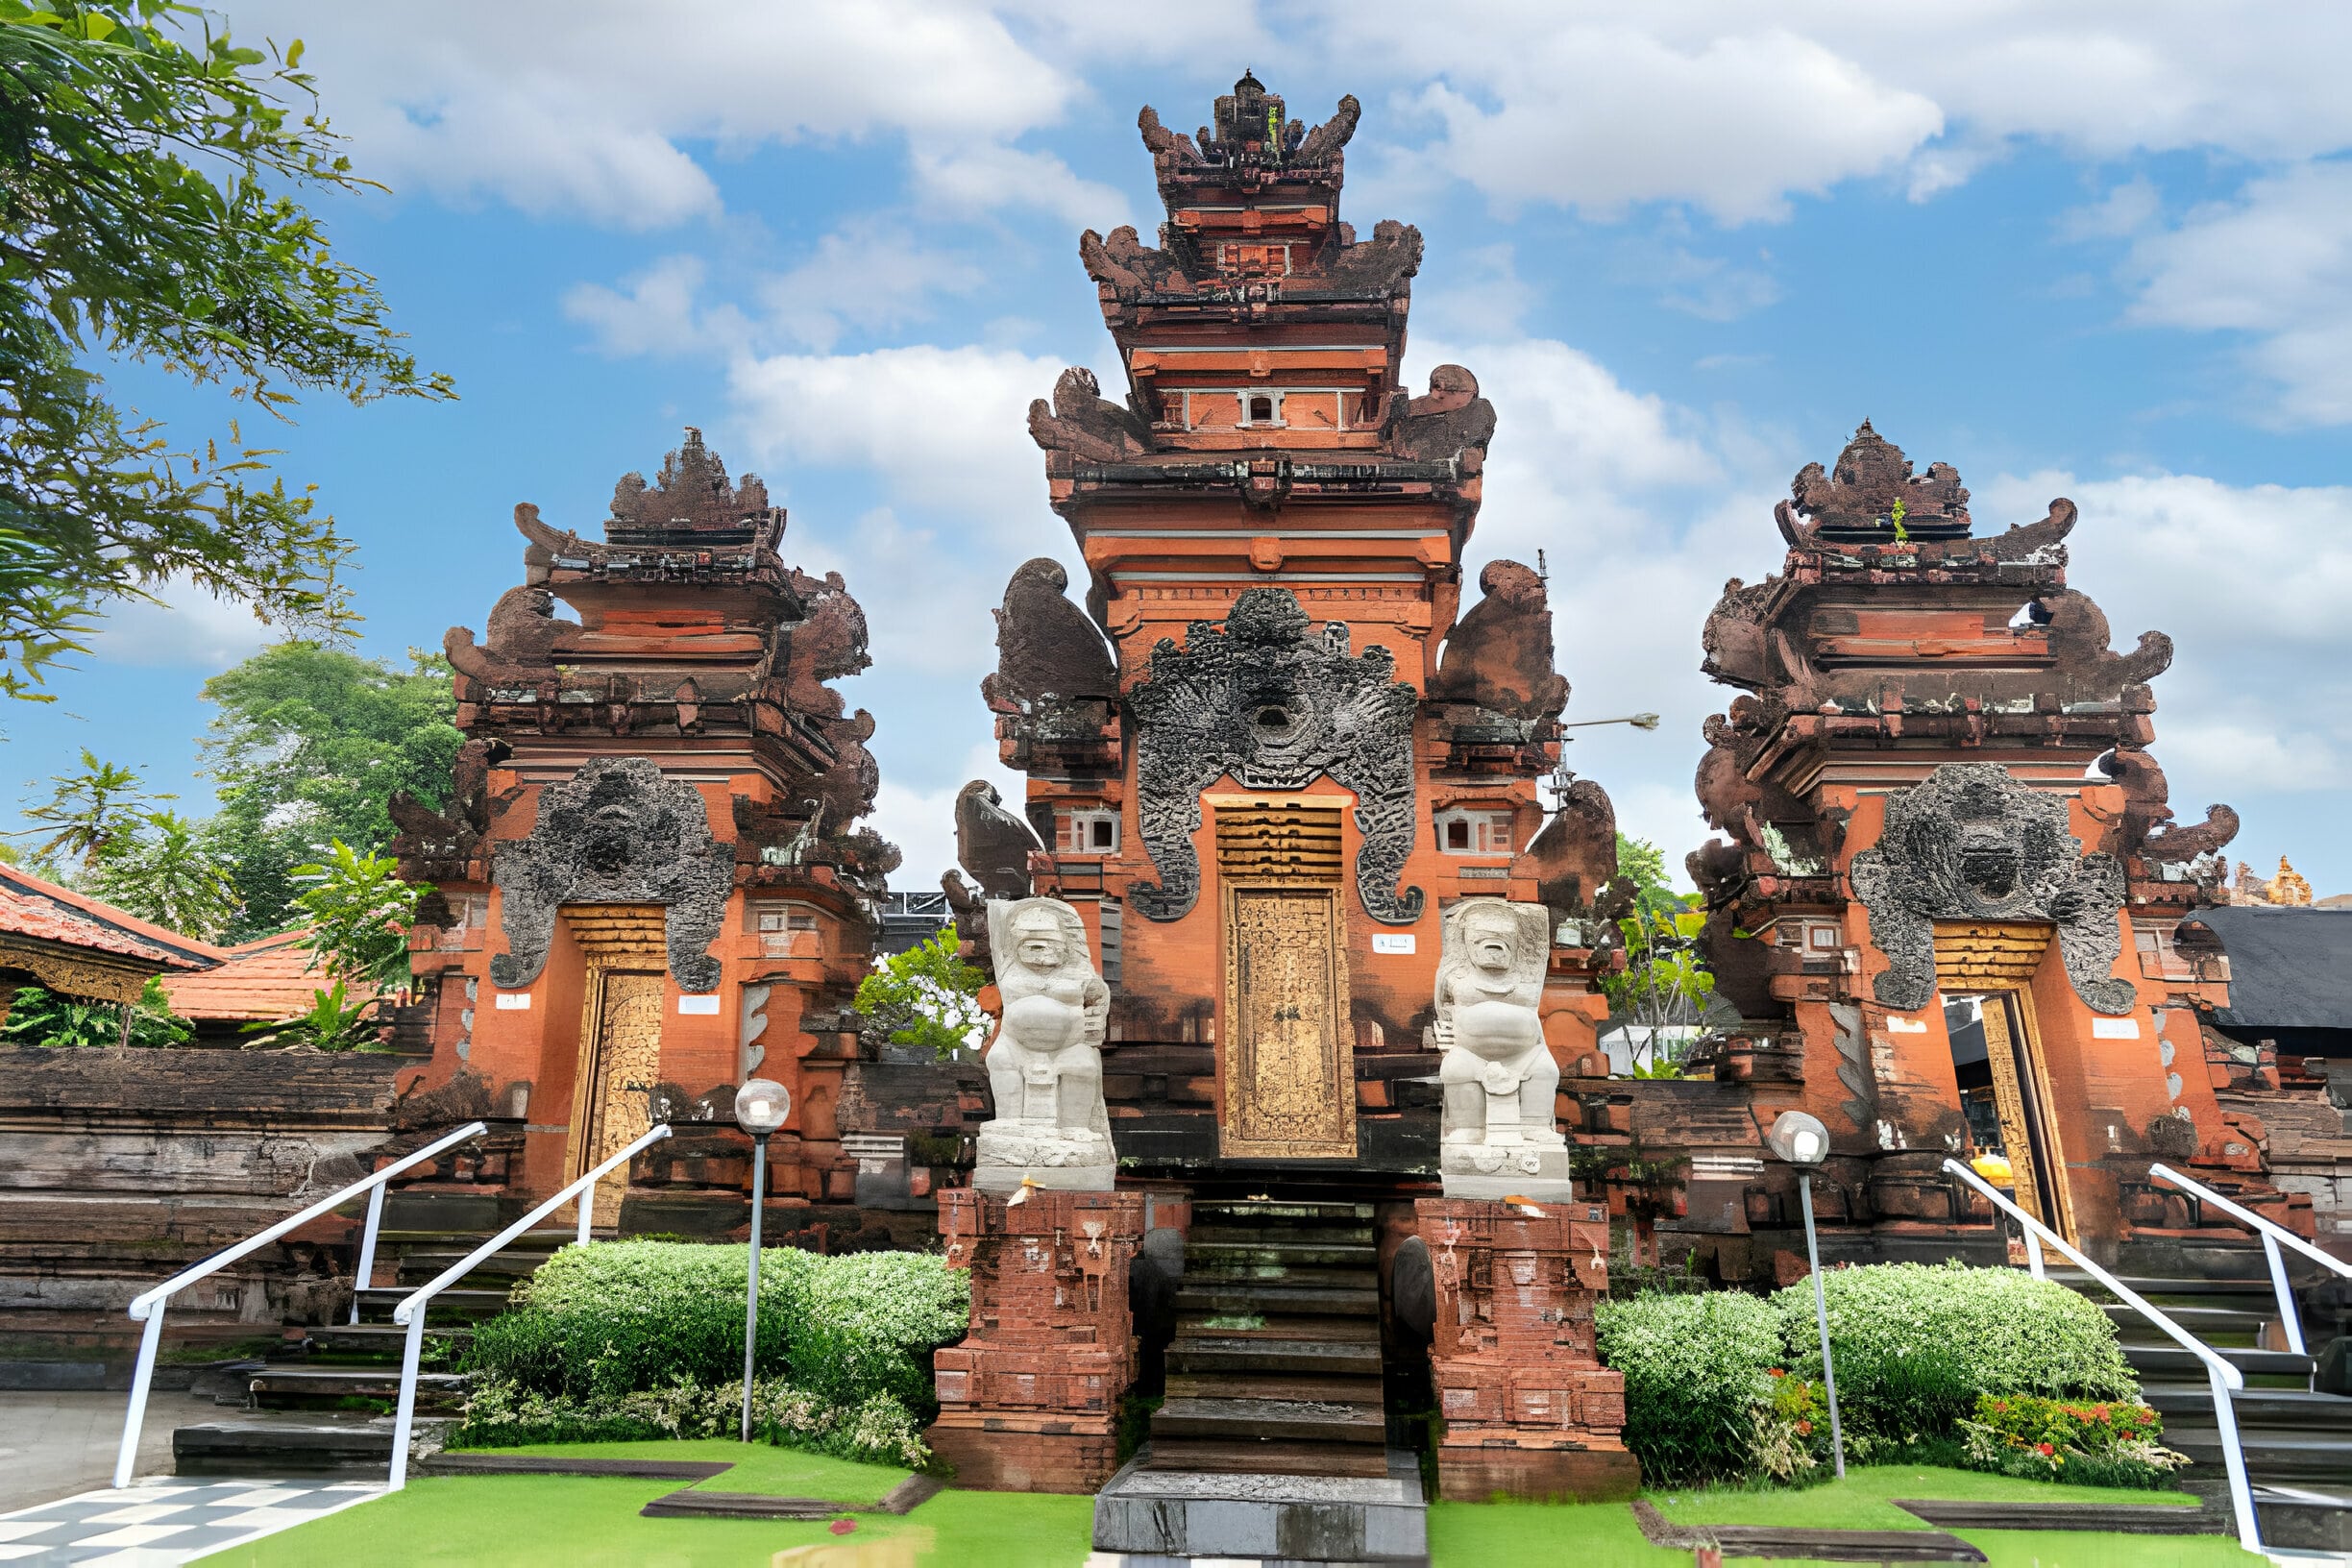 Petitenget Temple in Bali: The Serene Beauty